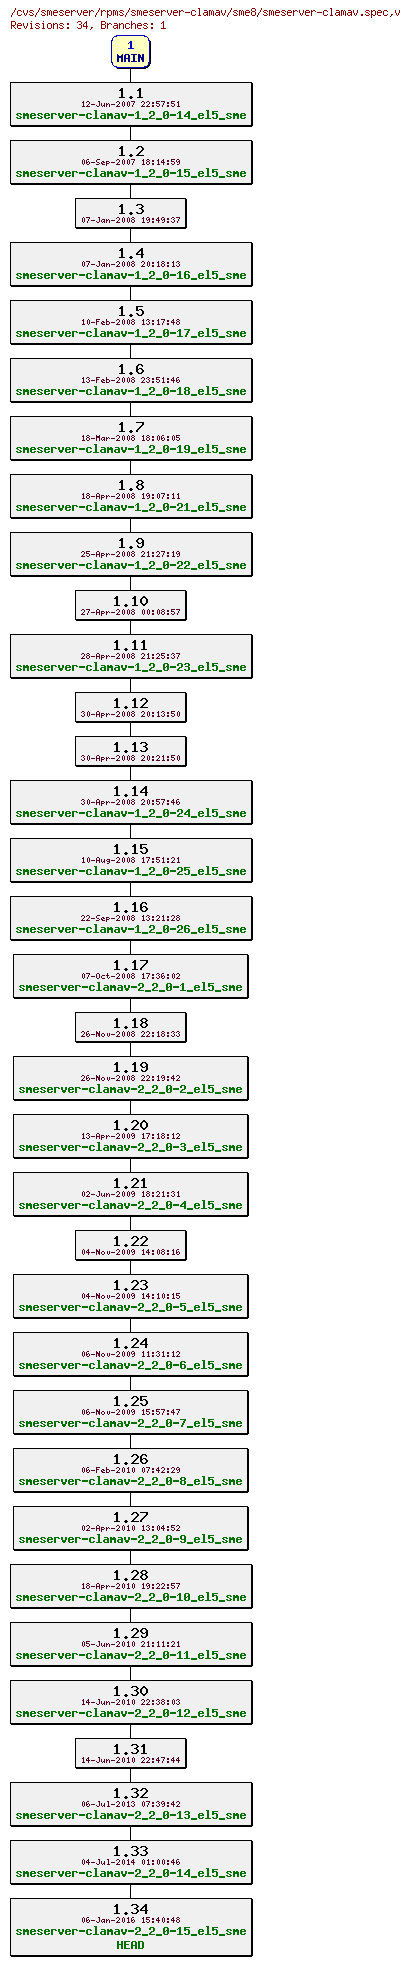 Revisions of rpms/smeserver-clamav/sme8/smeserver-clamav.spec